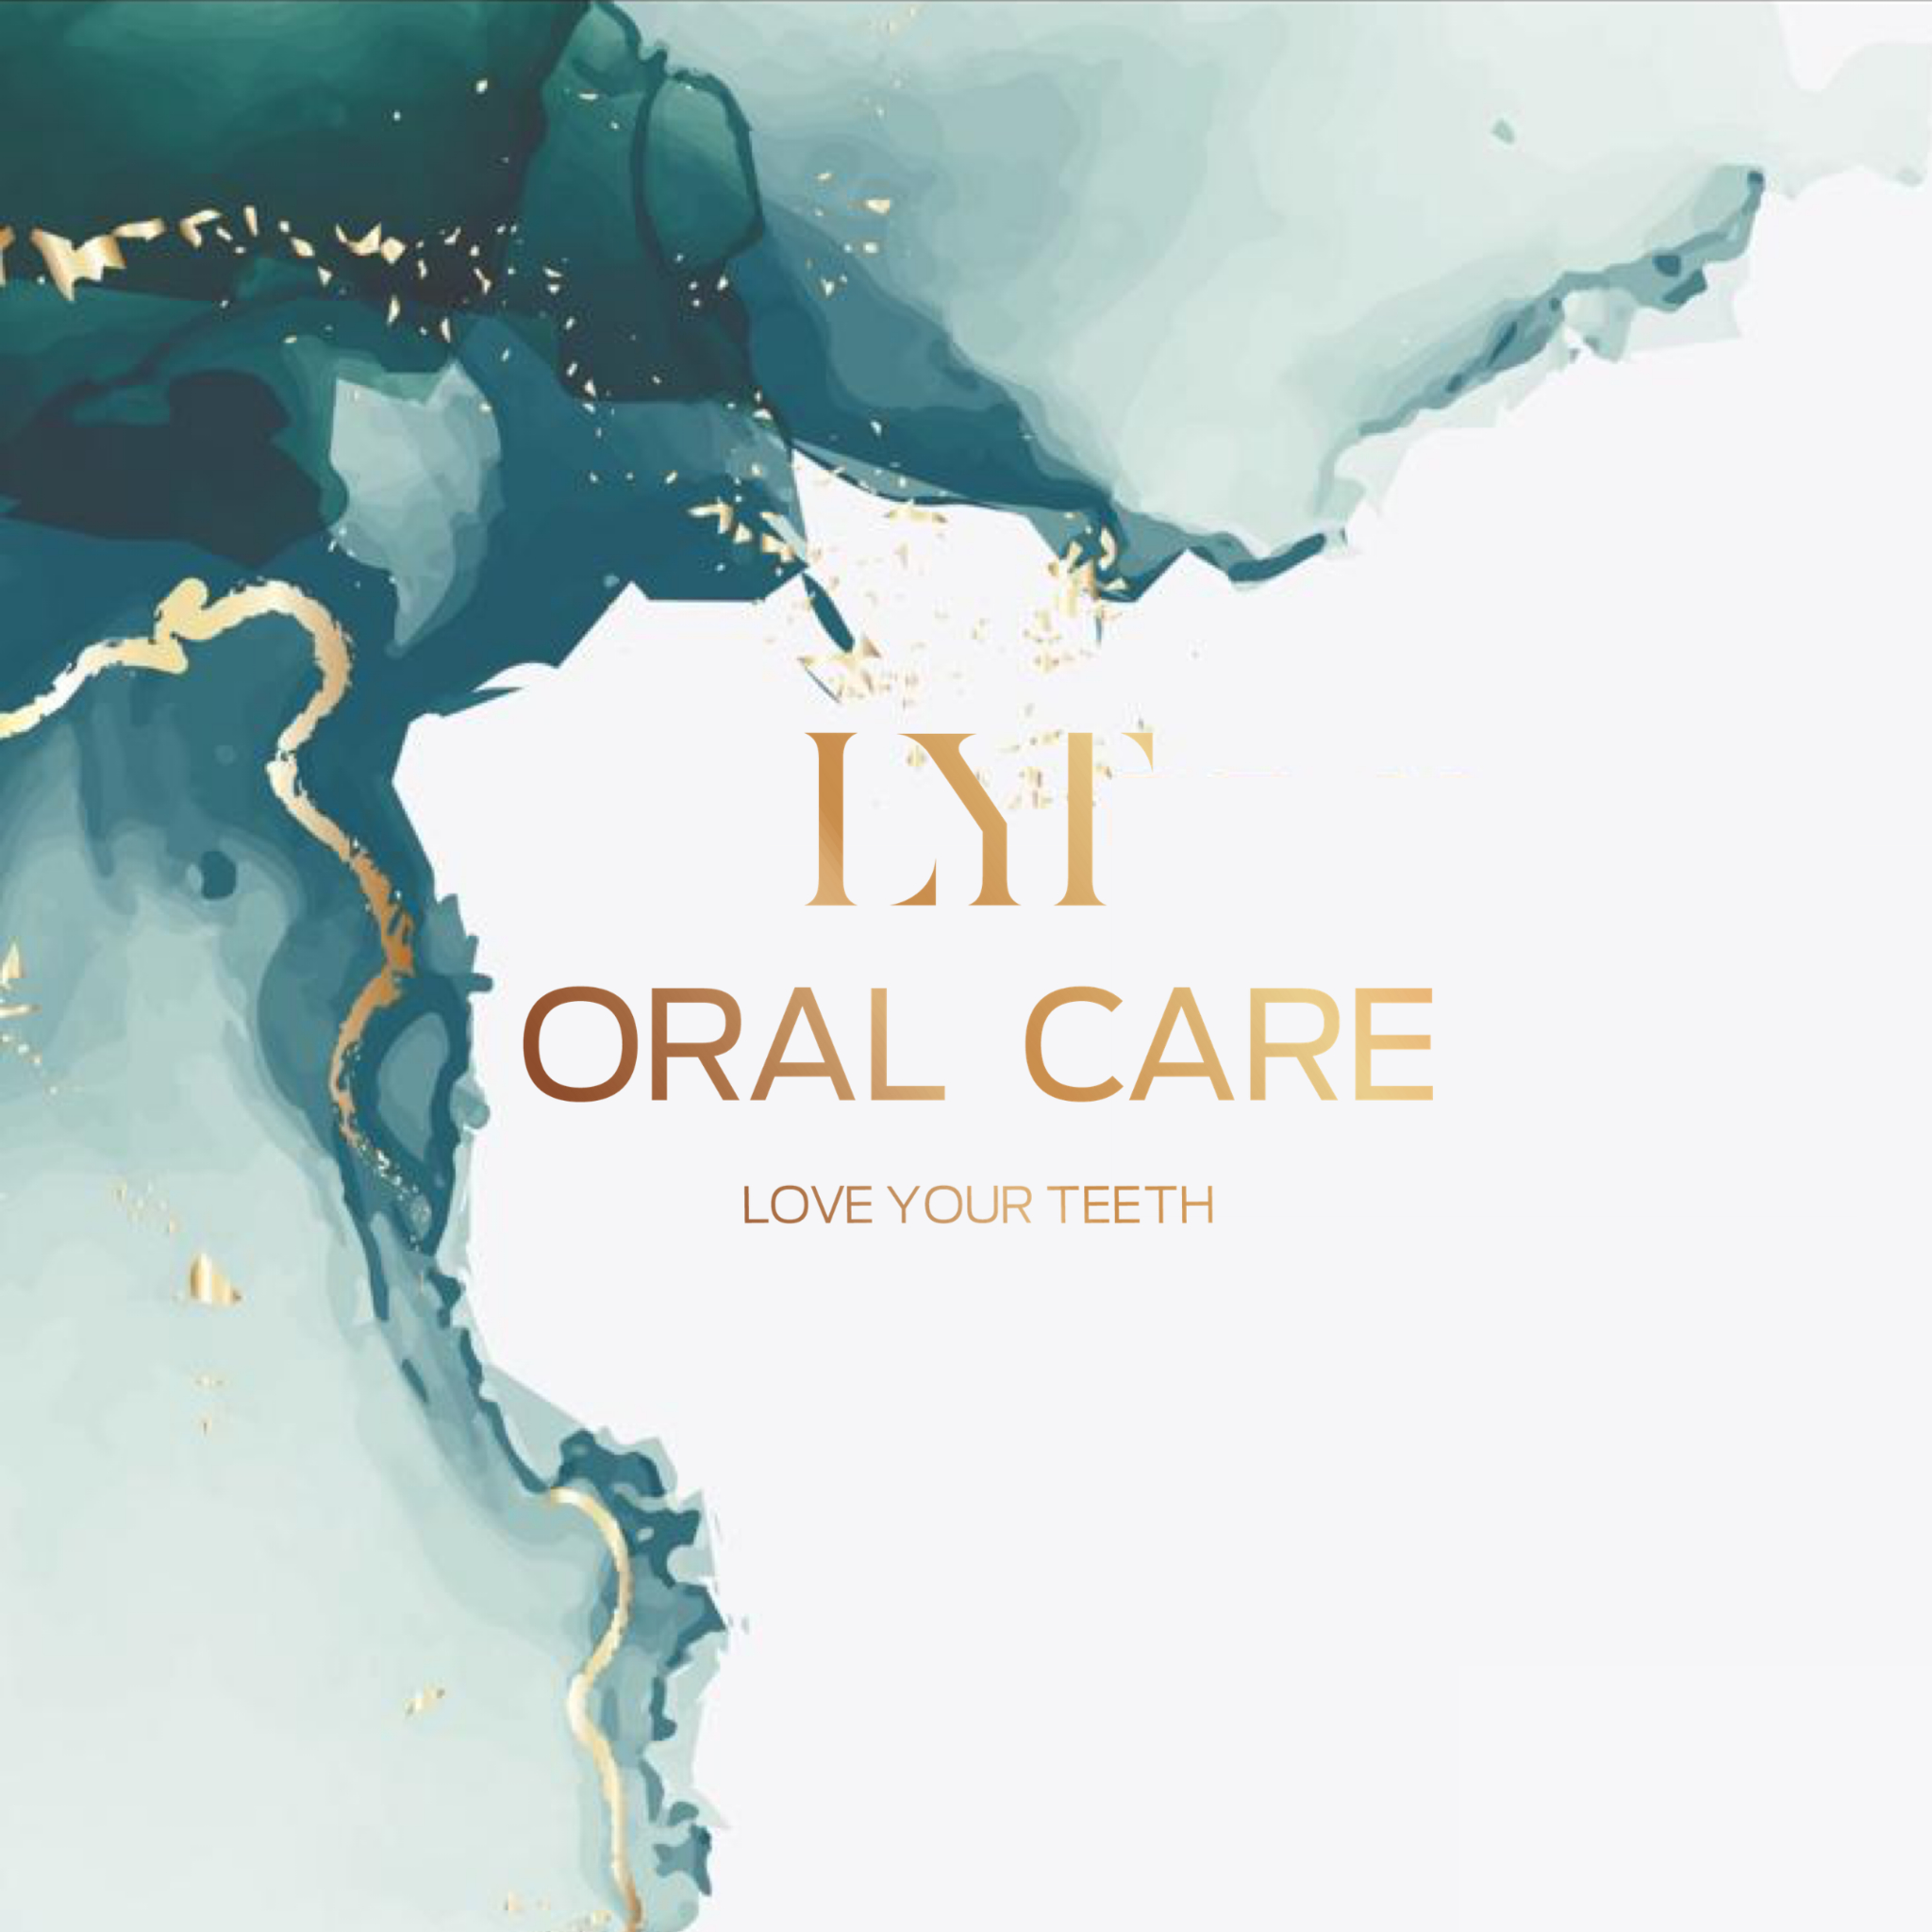 LYT Oral Care - Dental Hygienists